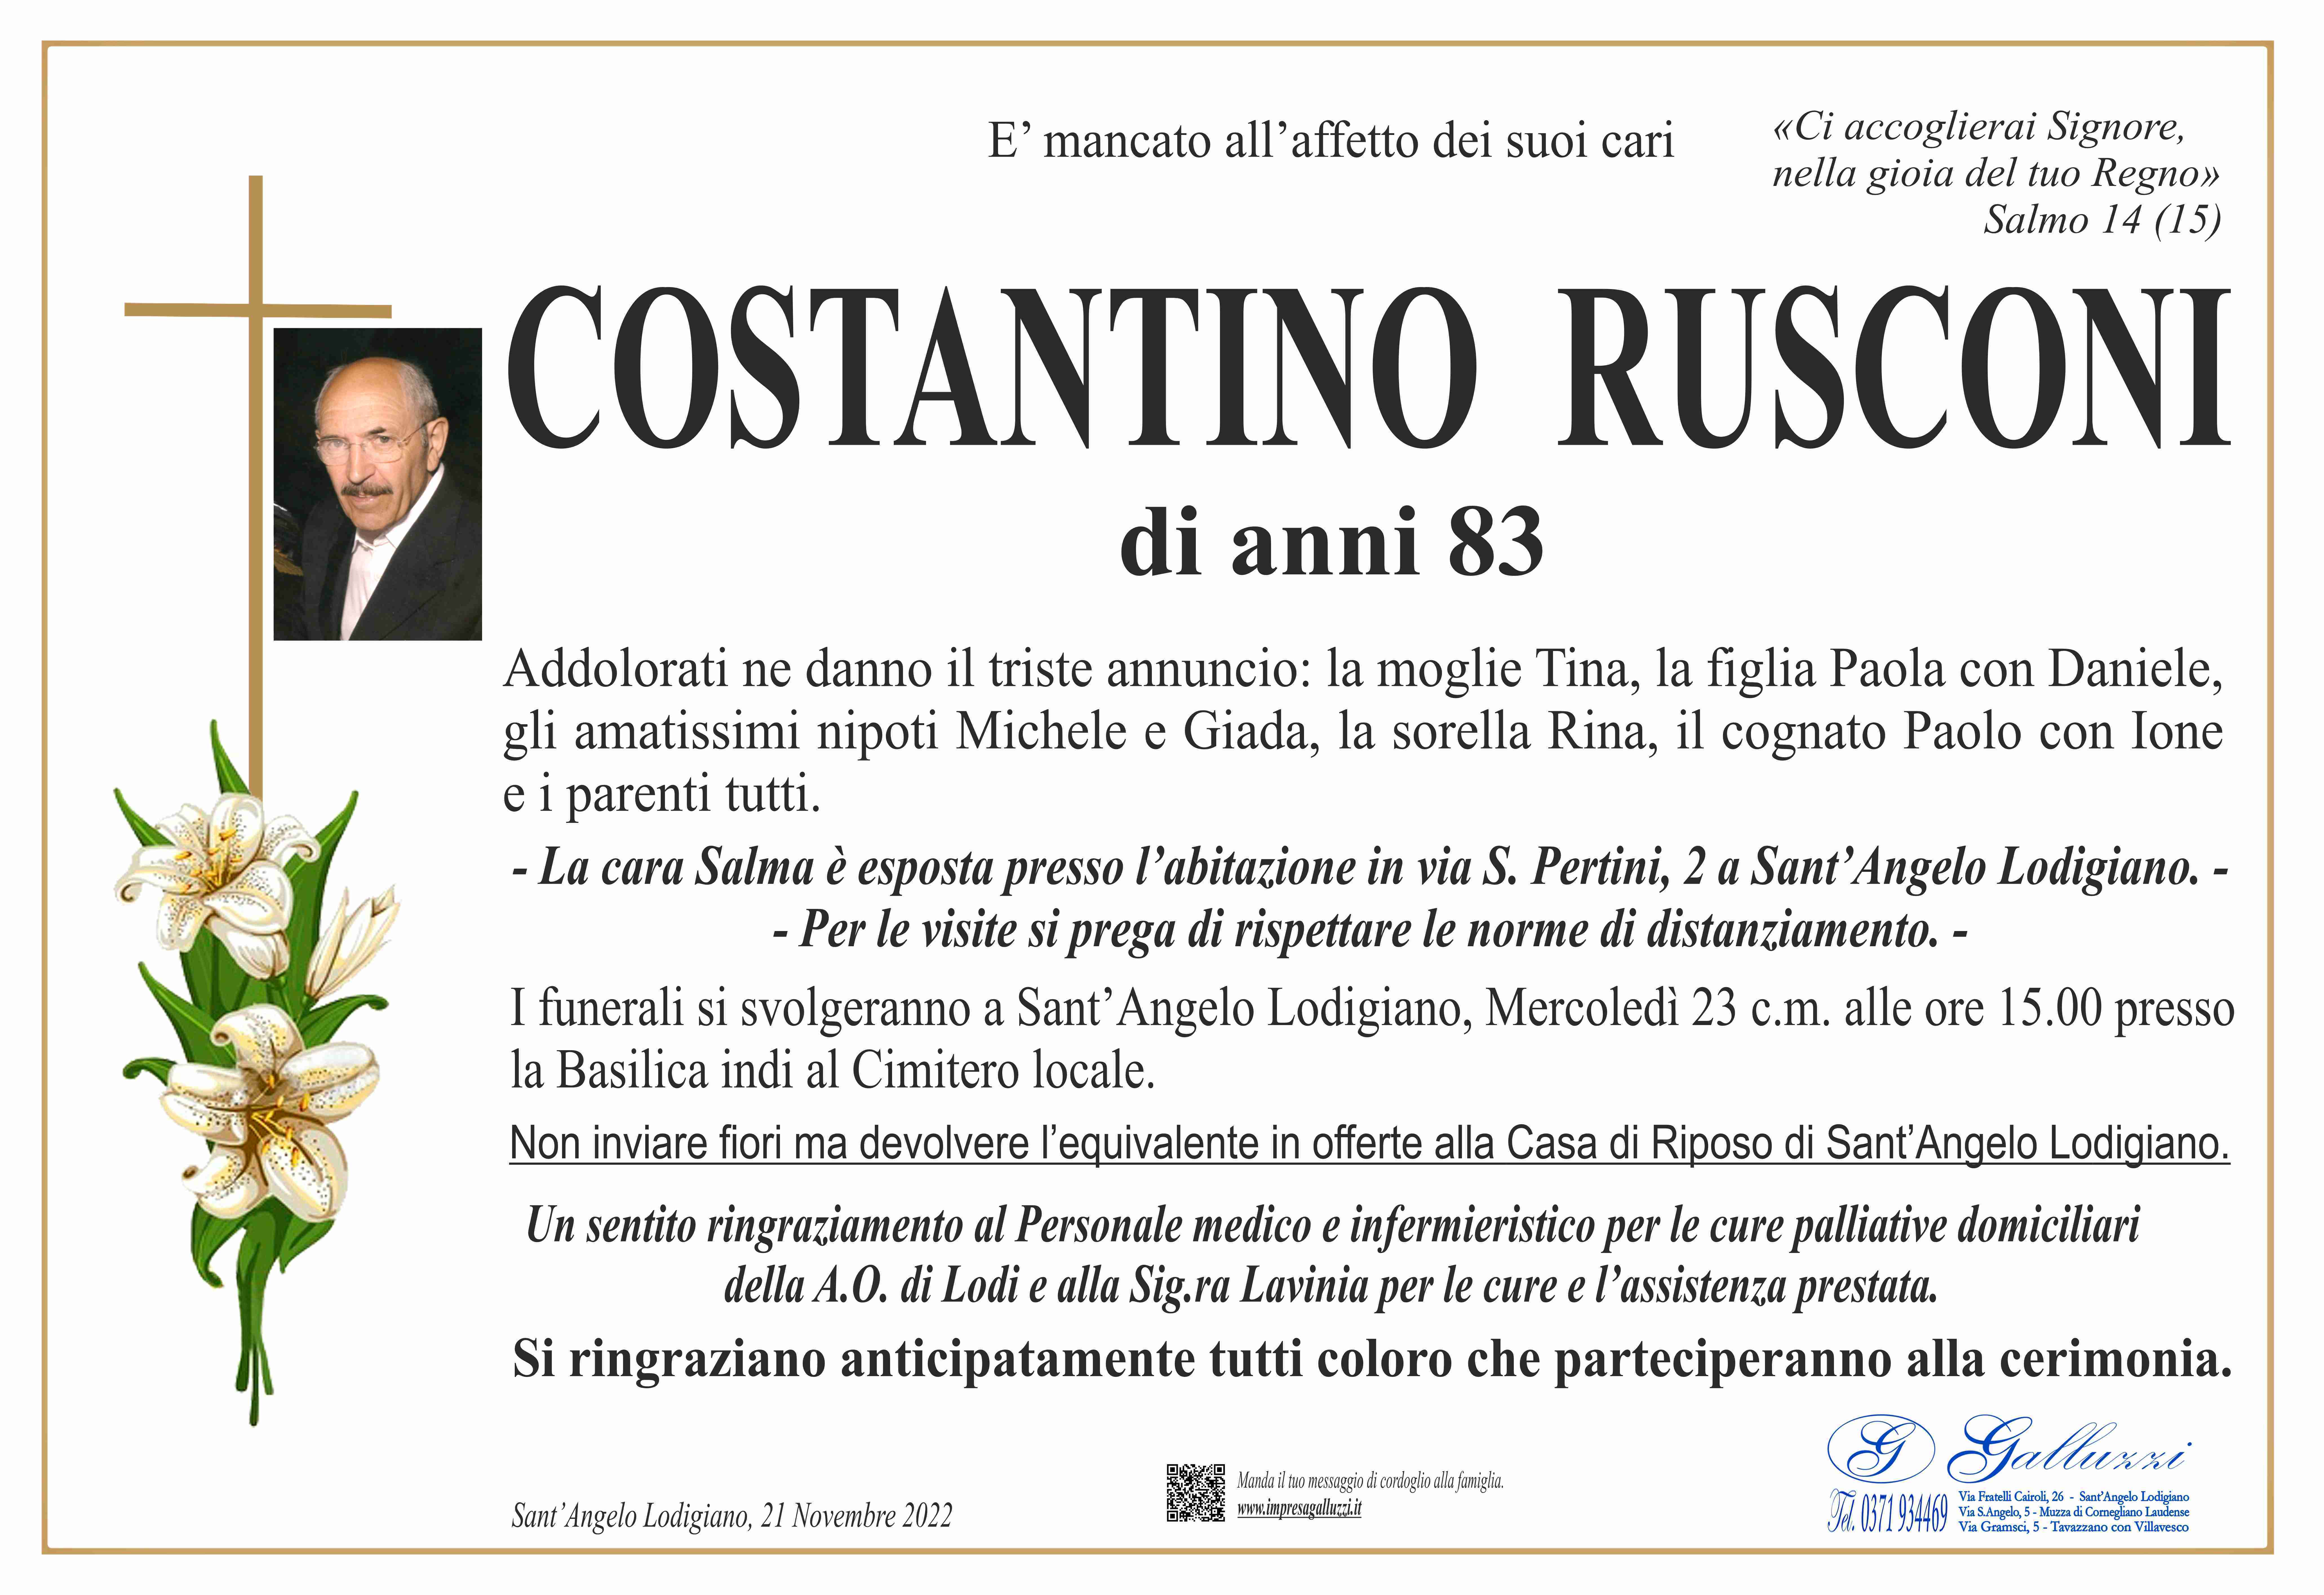 Costantino Rusconi